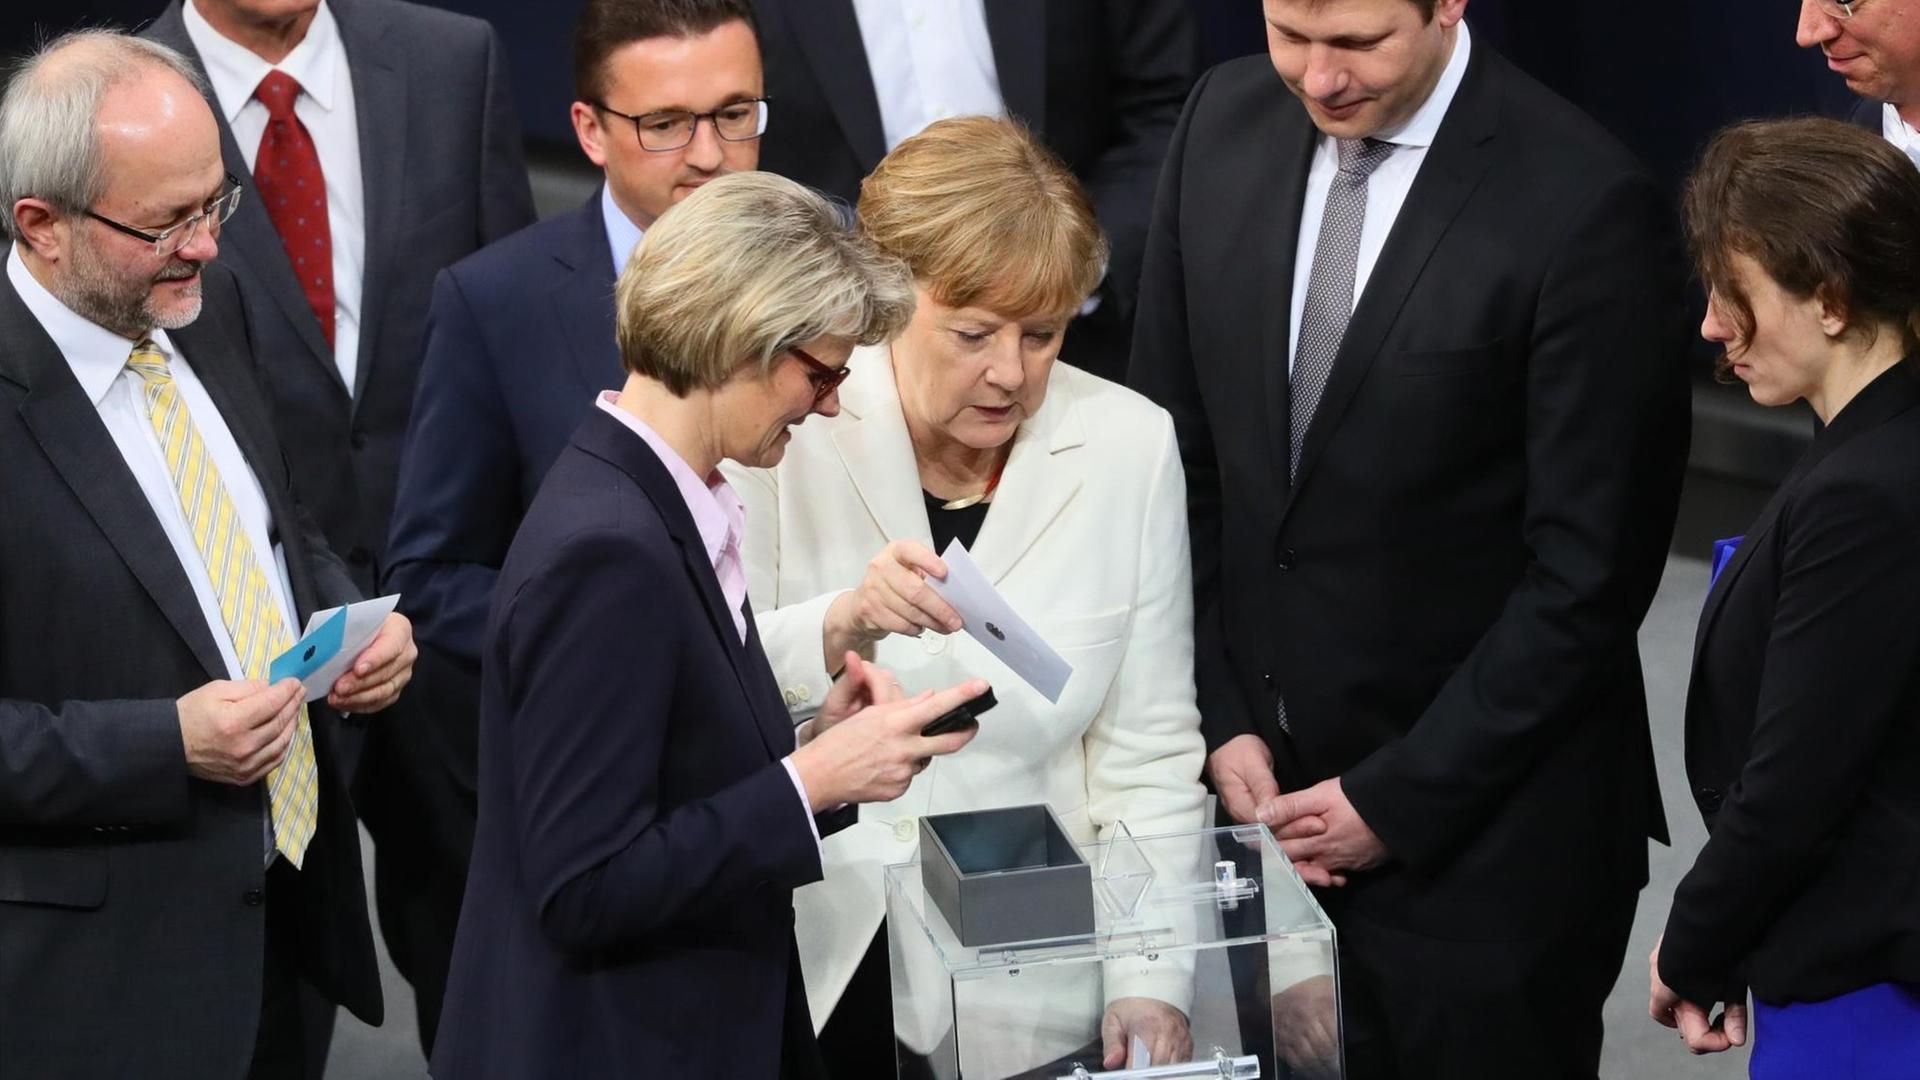  Bundeskanzlerin Angela Merkel gibt ihre Stimme zur Wahl der Bundeskanzlerin im Reichstagsgebäude ab.